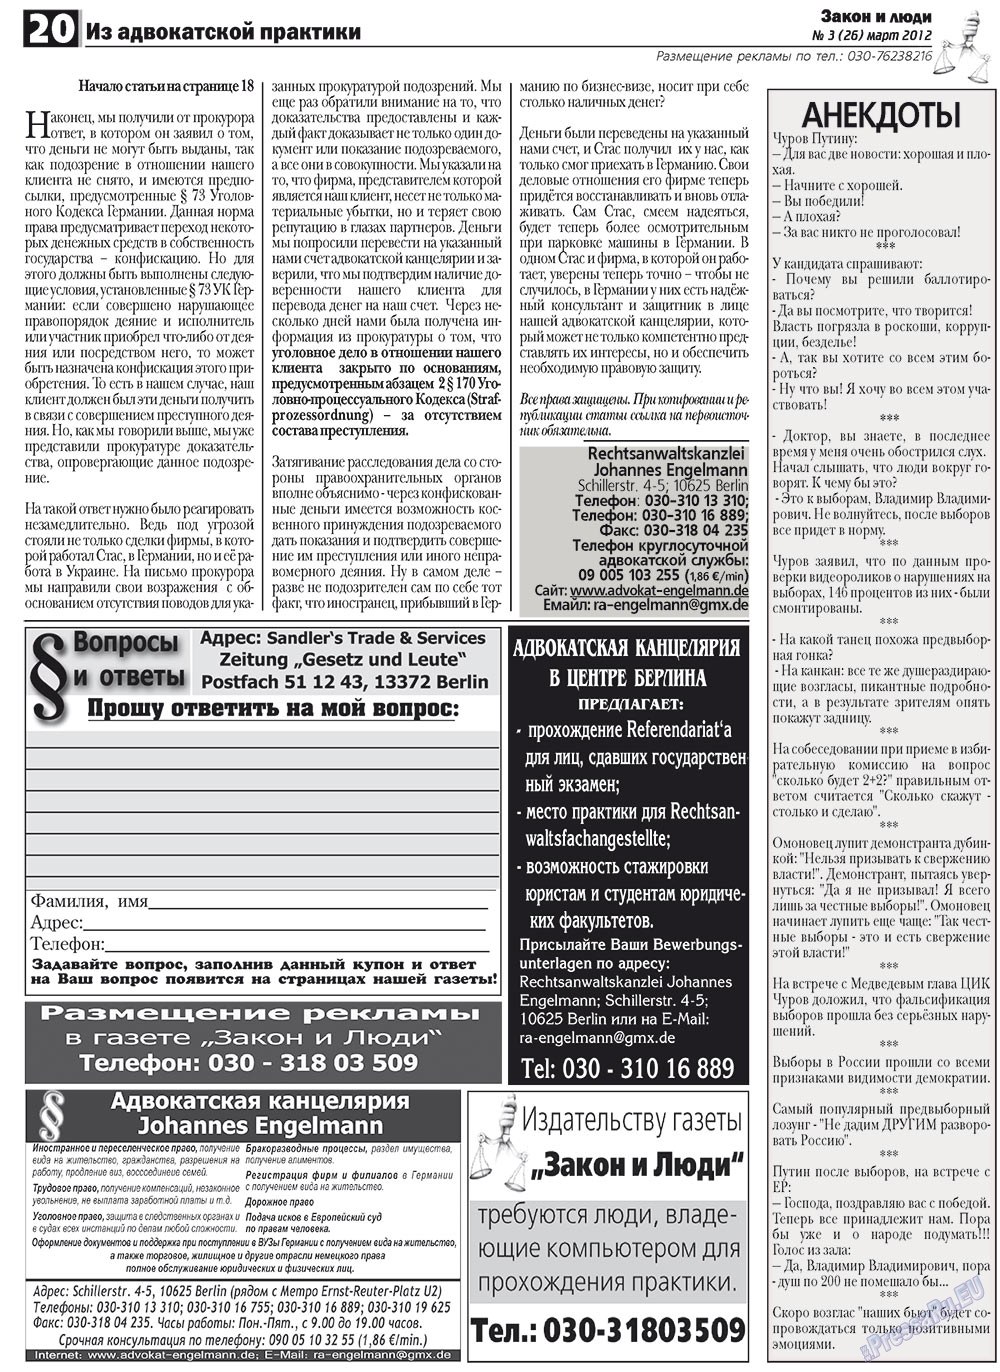 Закон и люди, газета. 2012 №3 стр.20